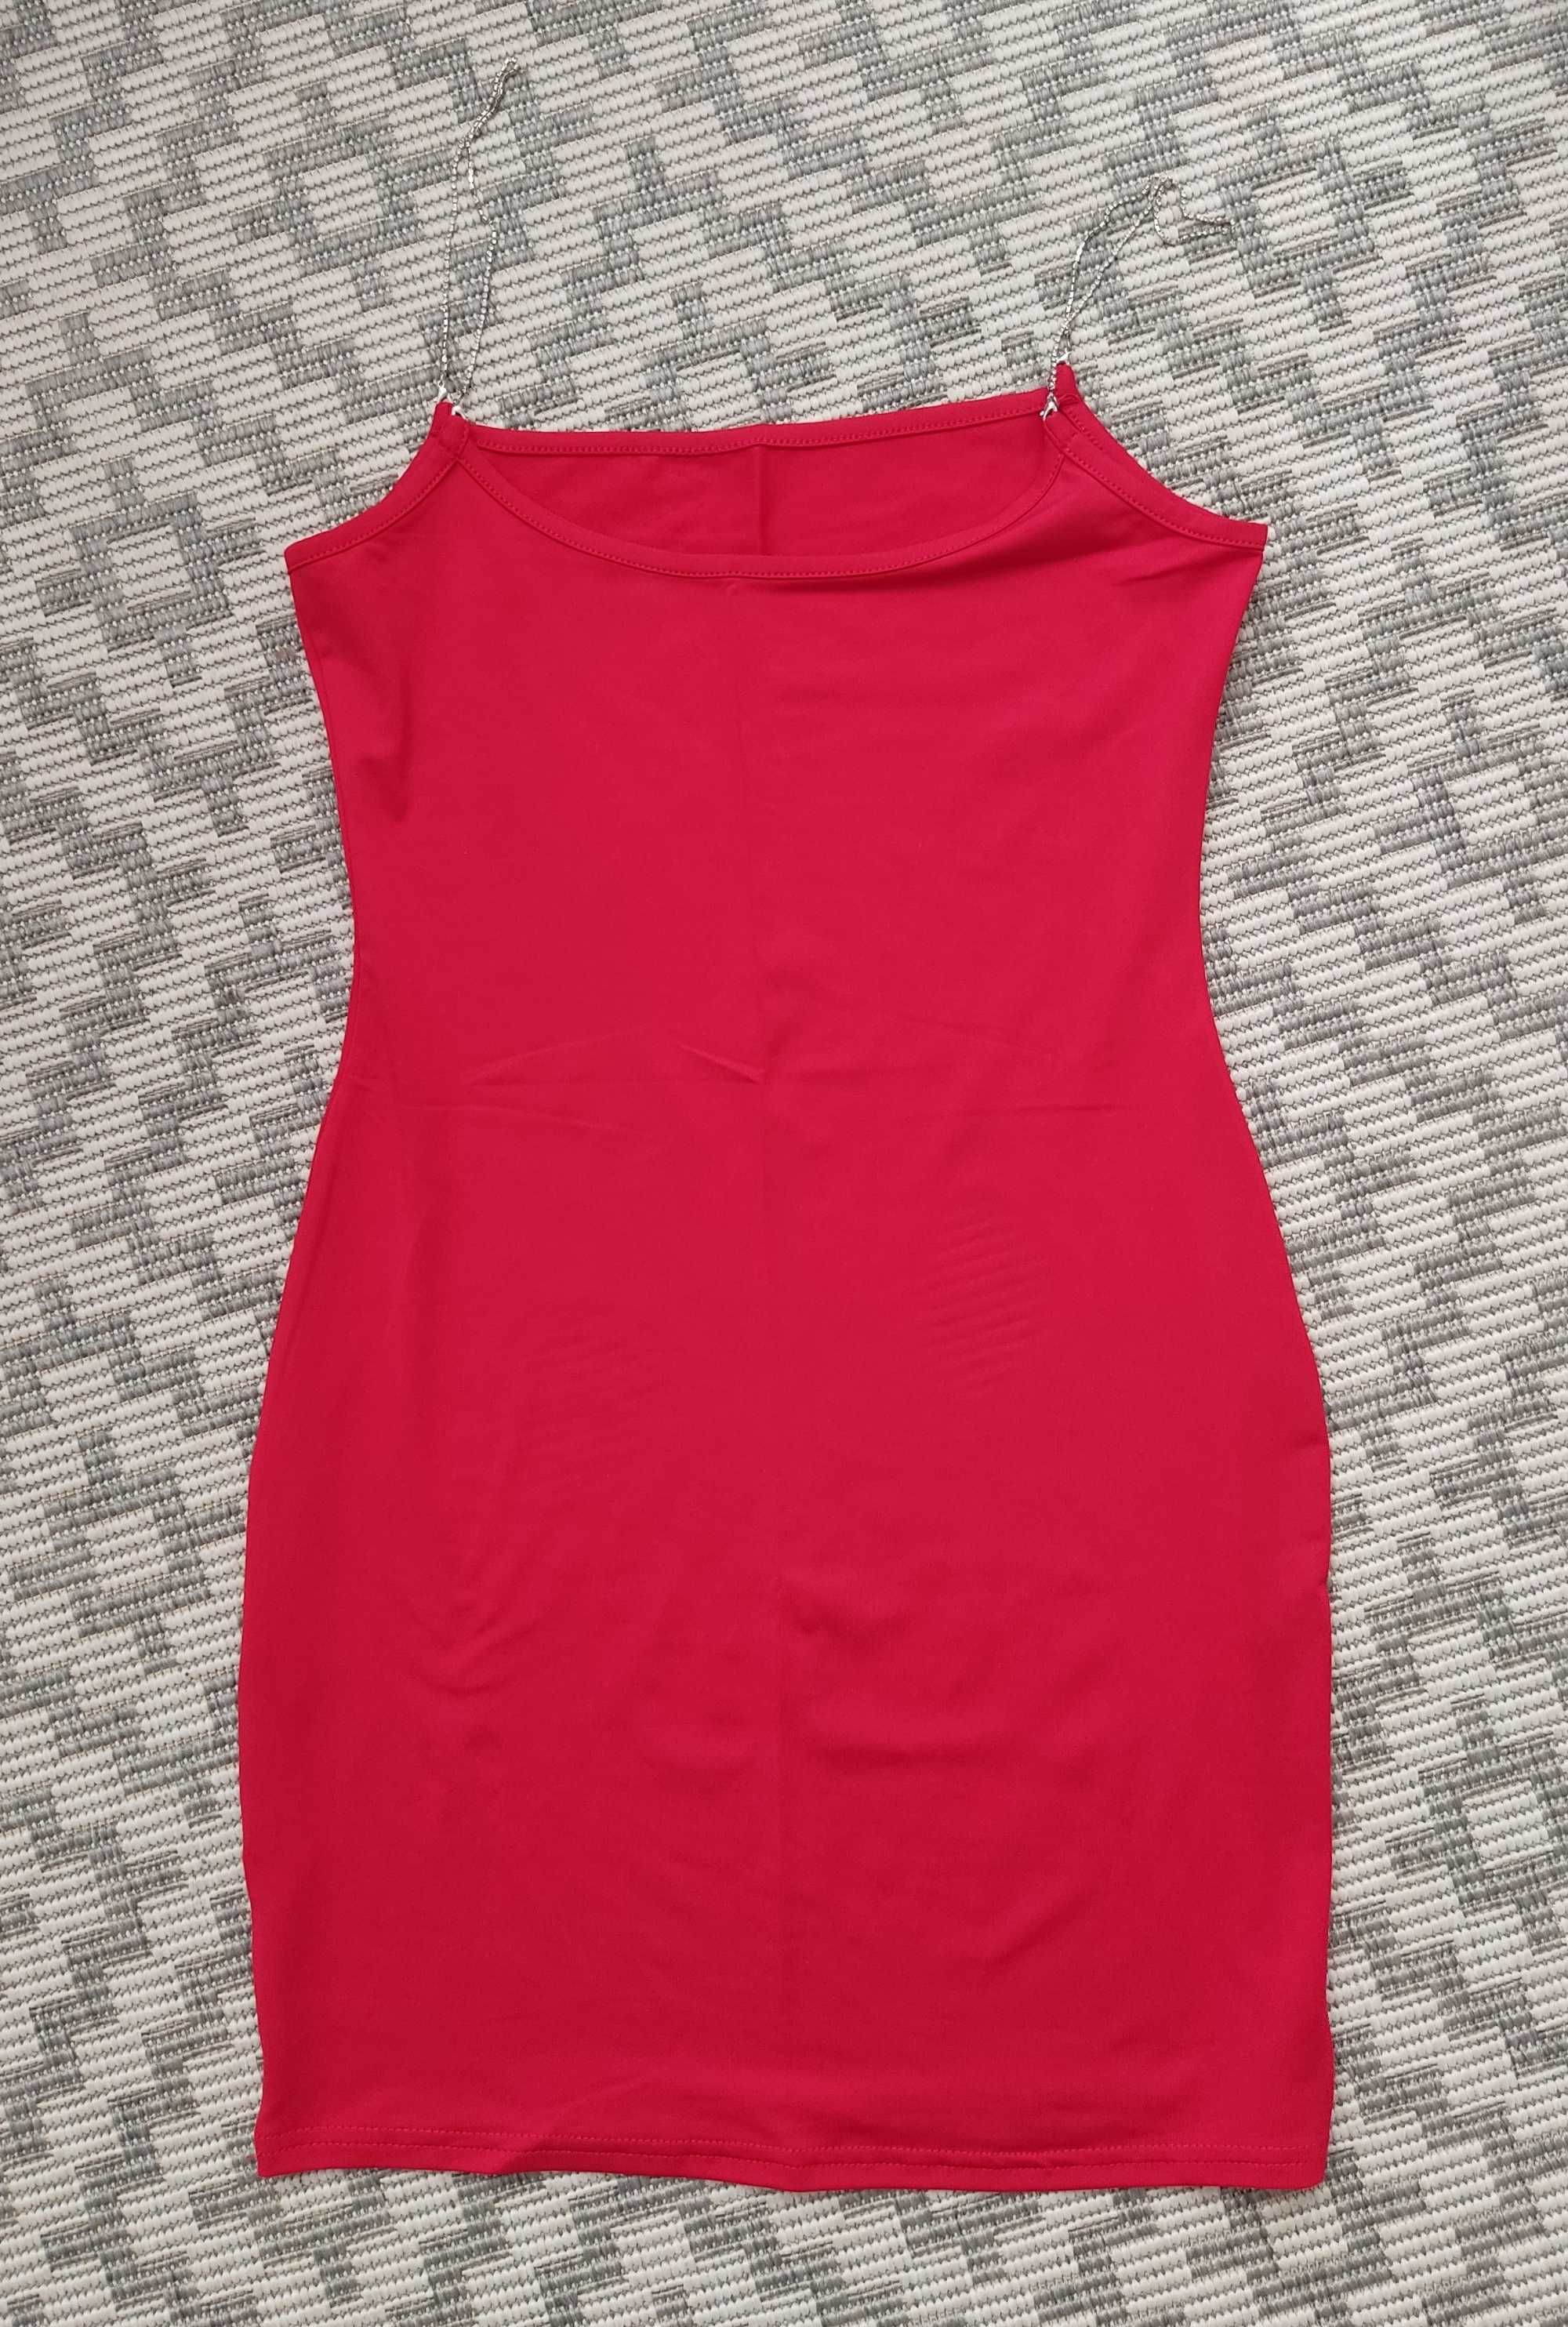 Sukienka czerwona mini sexy bieliźniana ramiączka ozdobne odpinane